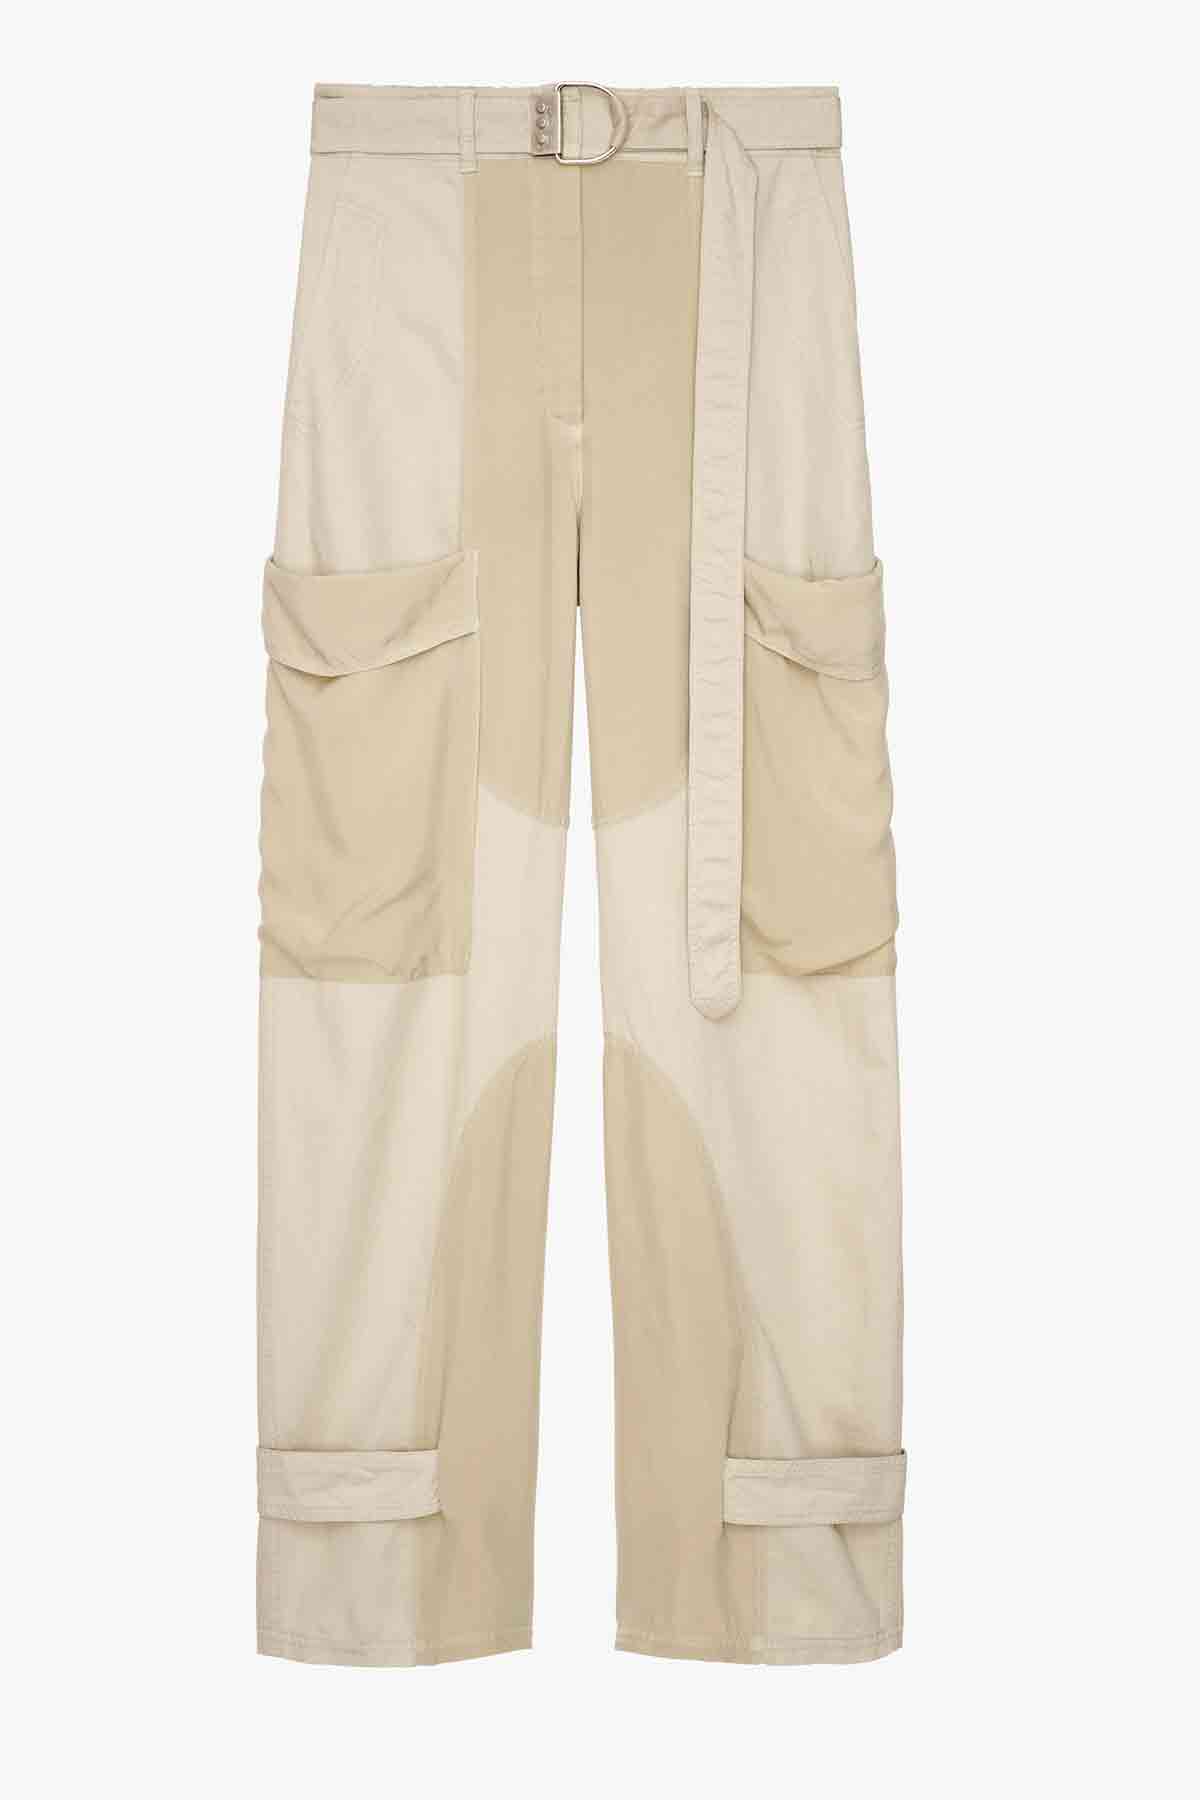 Pantalon-69,95-euros